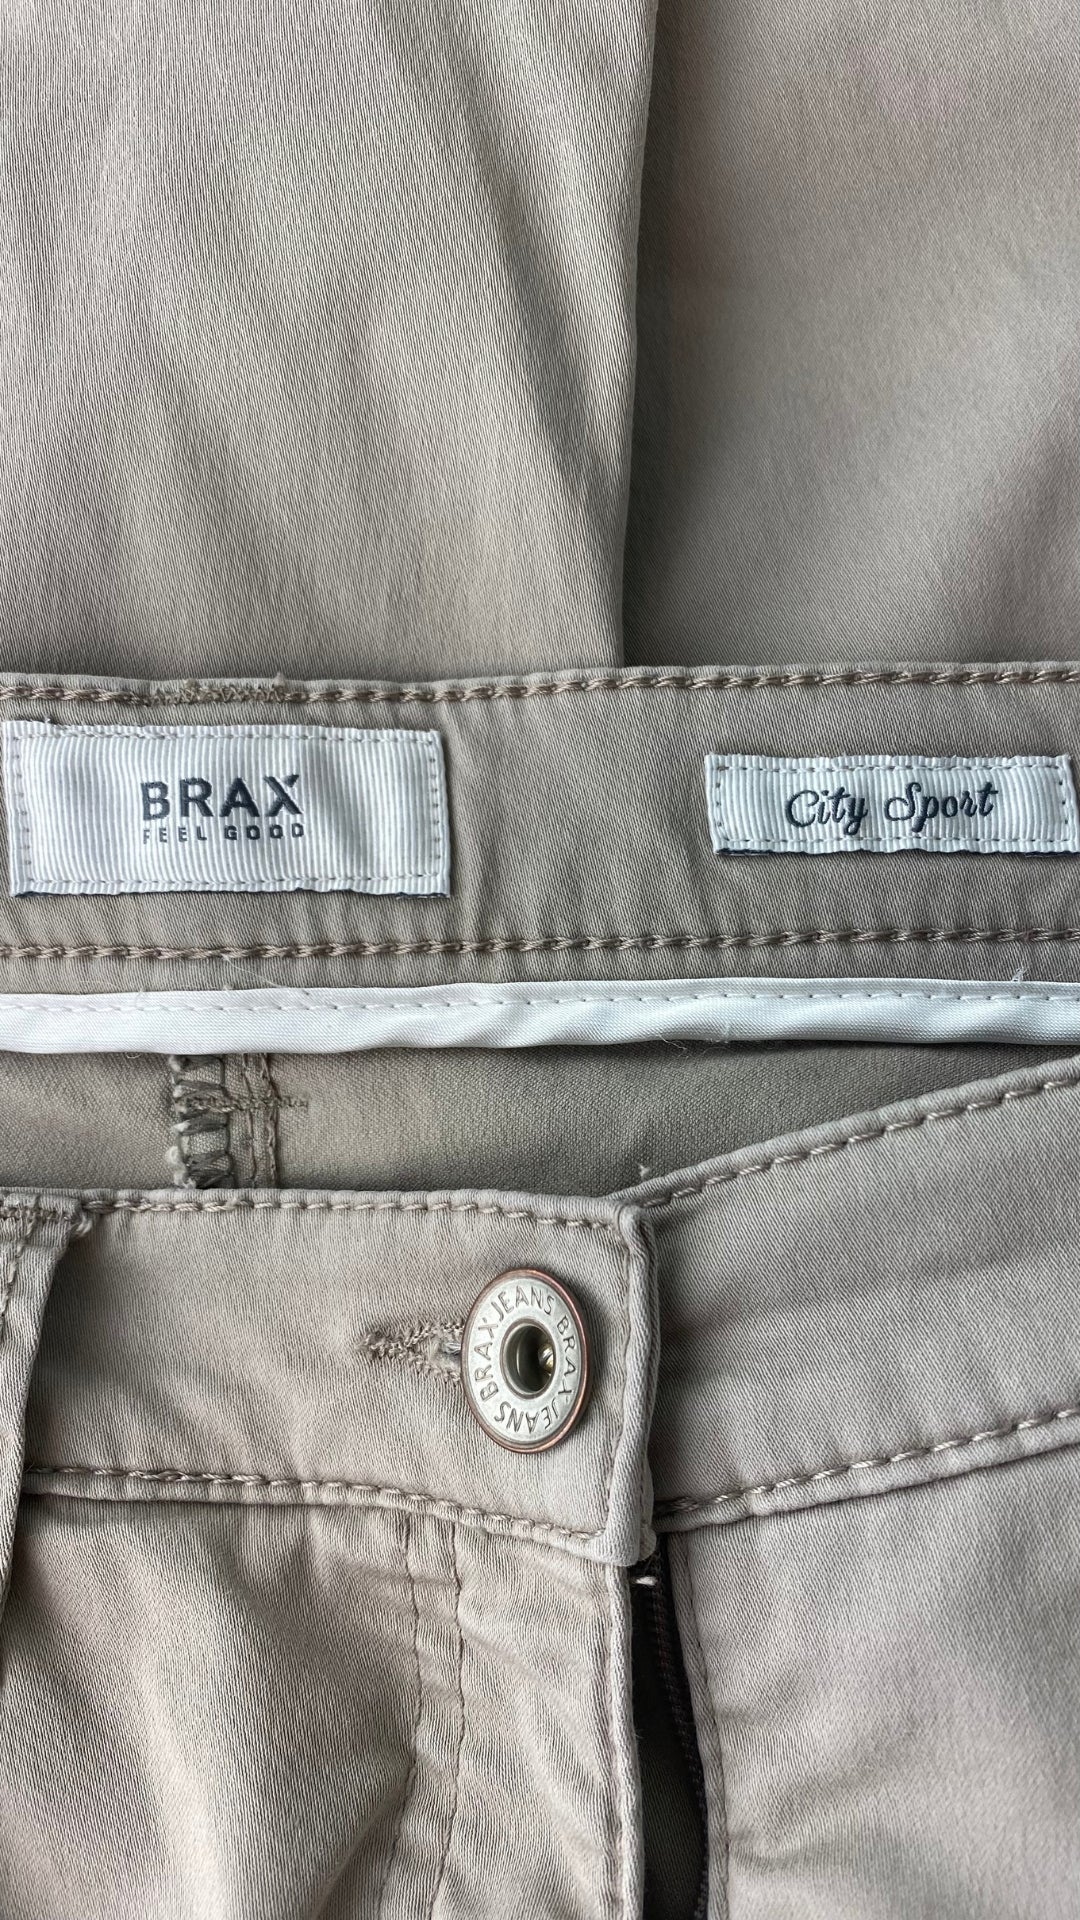 Pantalon taupe coupe droite, marque Brax, taille 27. Vue de l'étiquette de la marque.